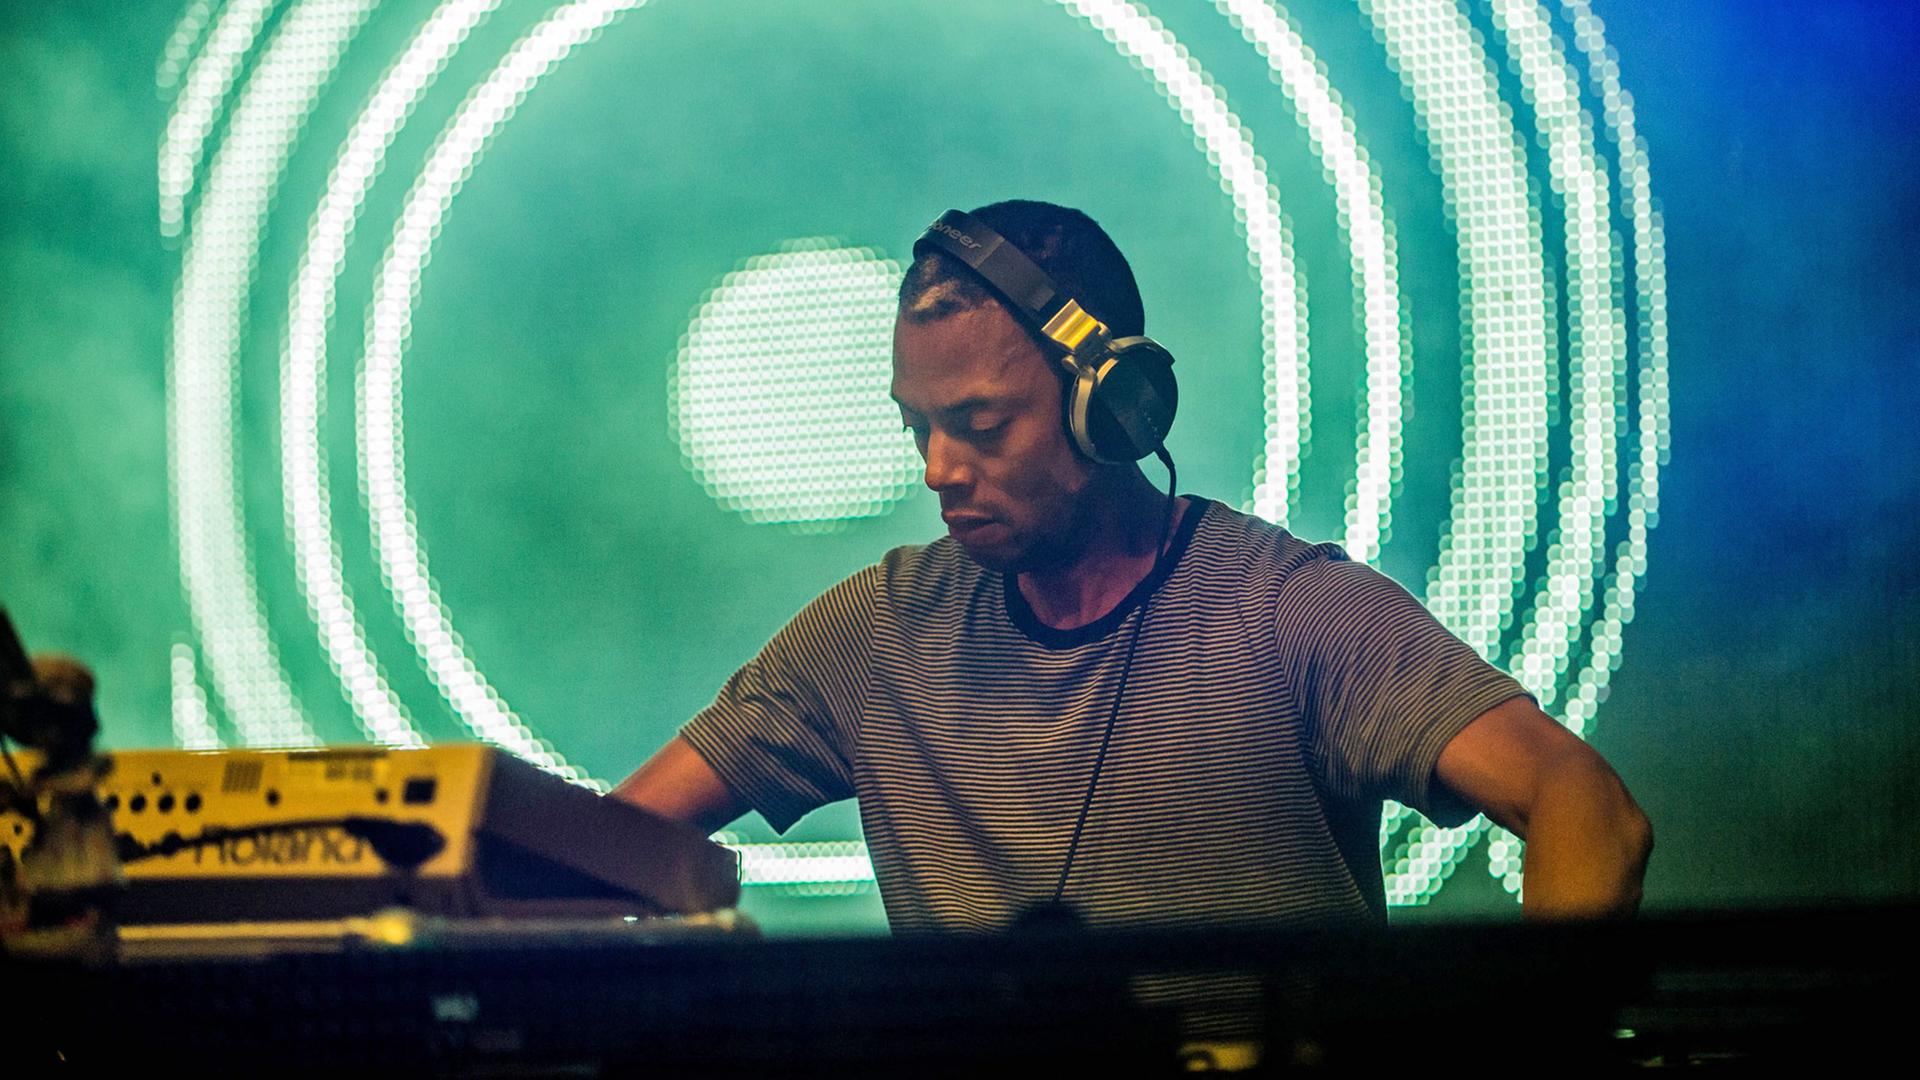 Der US-amerikanische Techno-DJ, Musiker und Produzent Jeff Mills, aufgenommen am 26.7.2014 beim Tomorrowland Music Festival im belgischen Boom